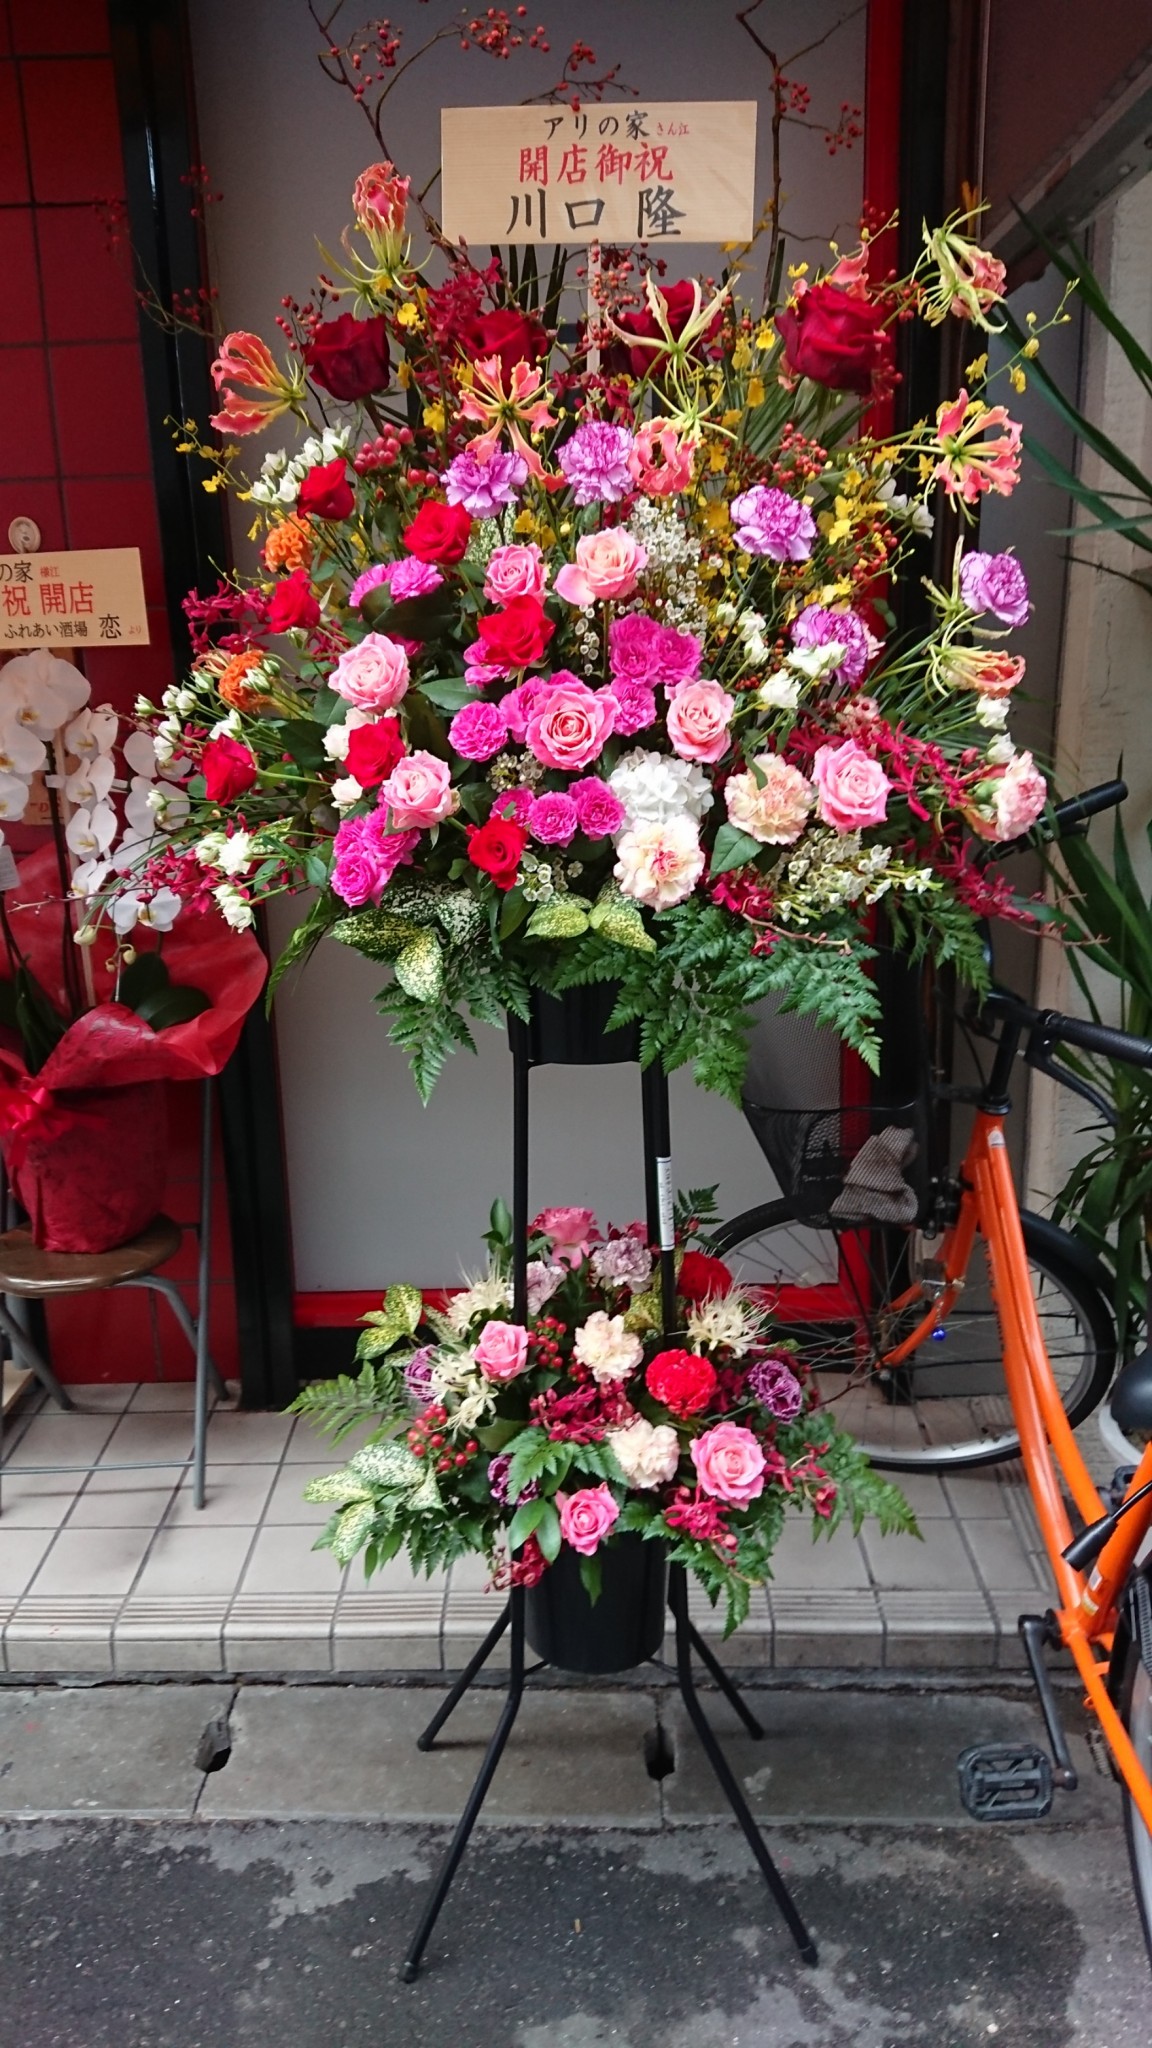 豊中市 庄内の韓国料理店の開店お祝いのスタンド花